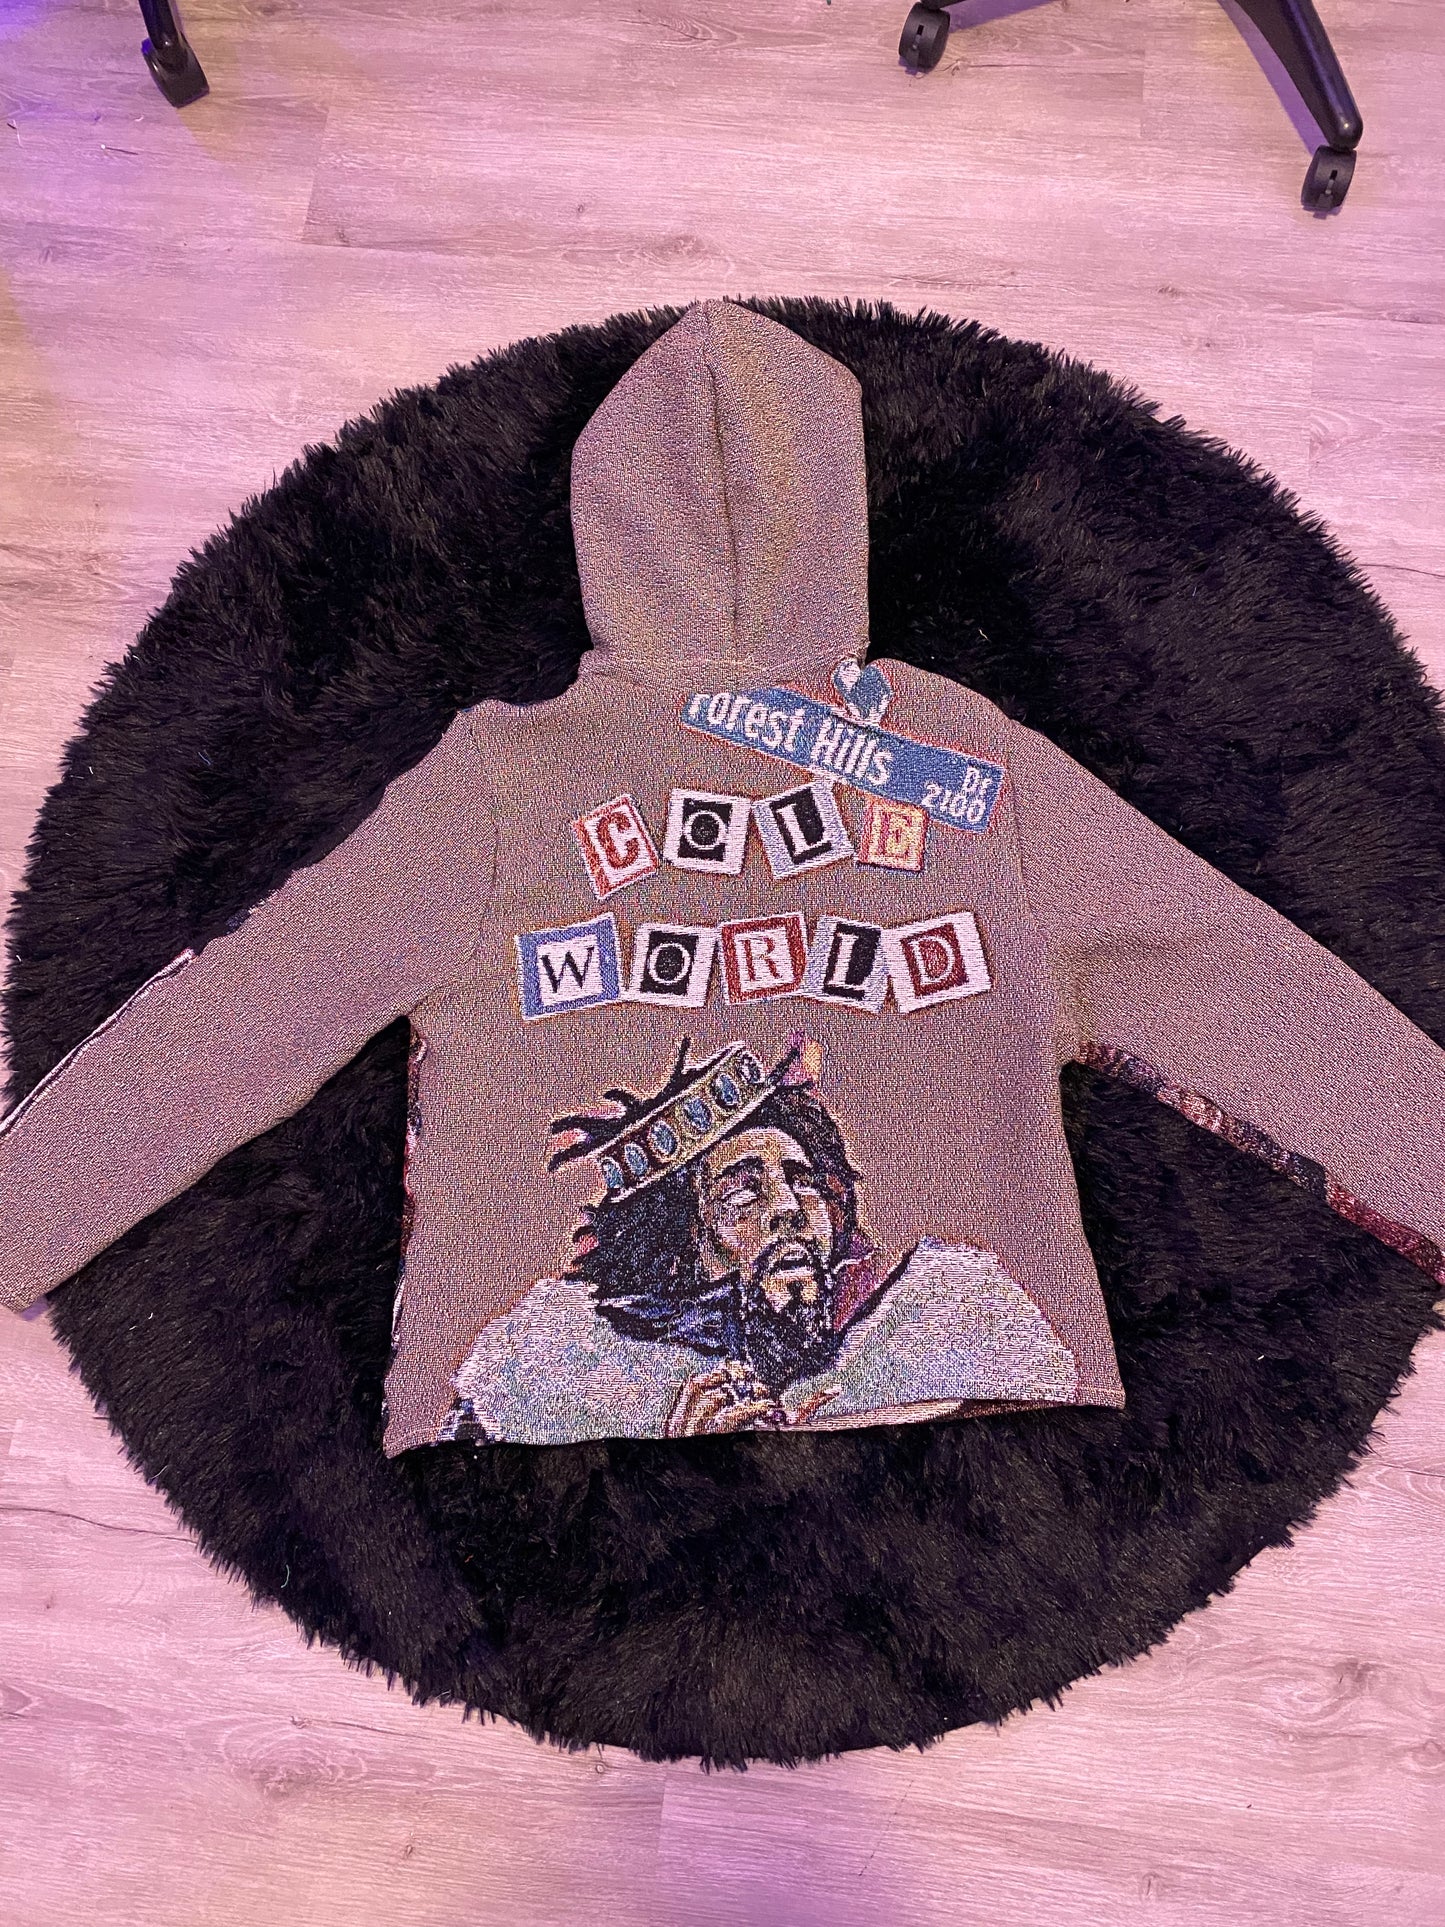 J Cole custom silk hoodie